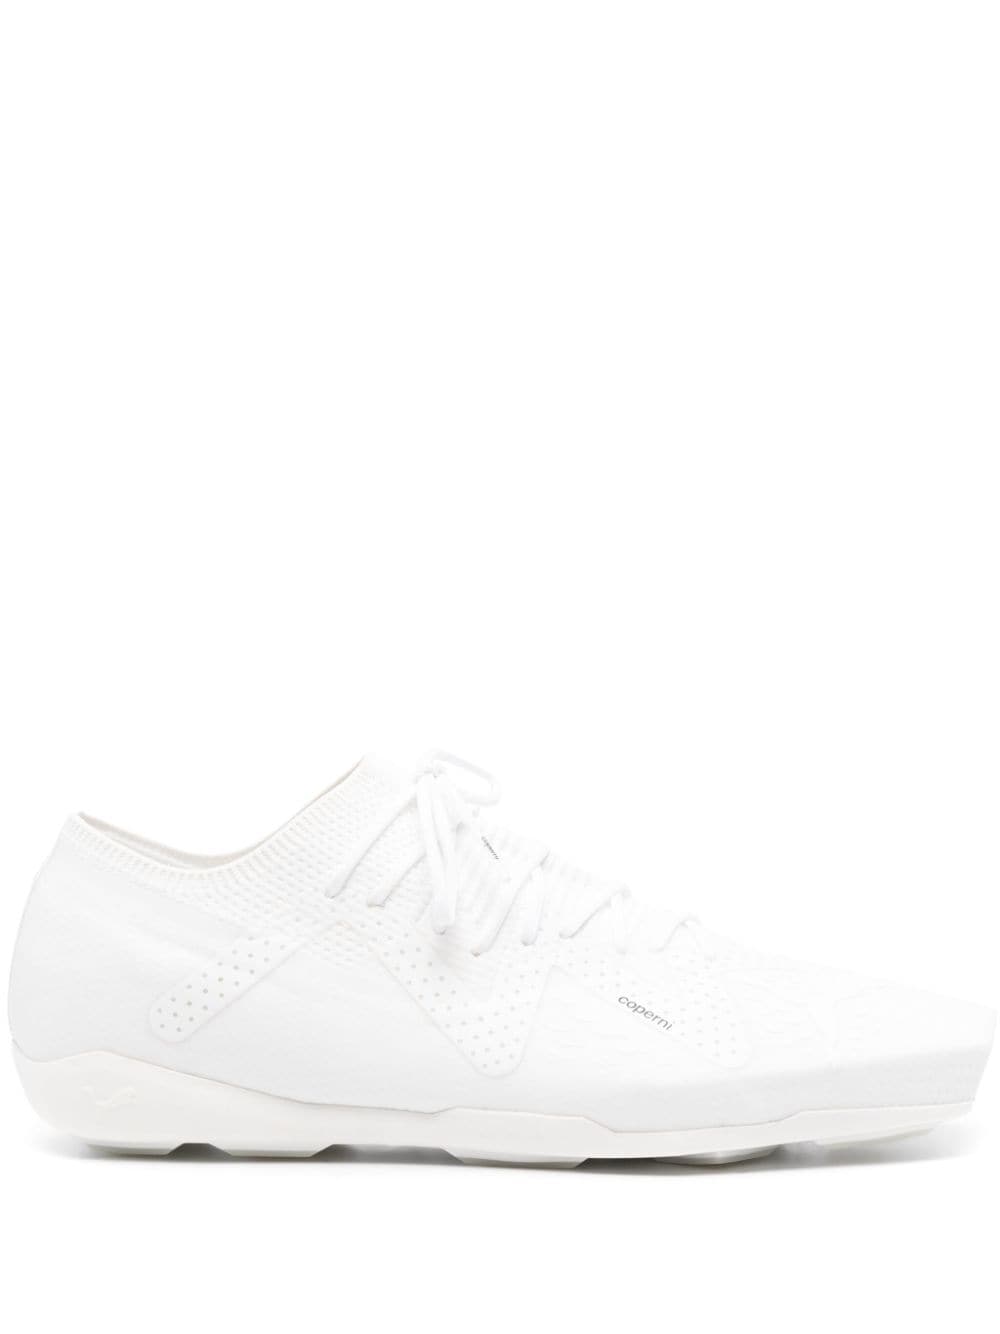 Coperni X Puma 90sqr Sneakers In White